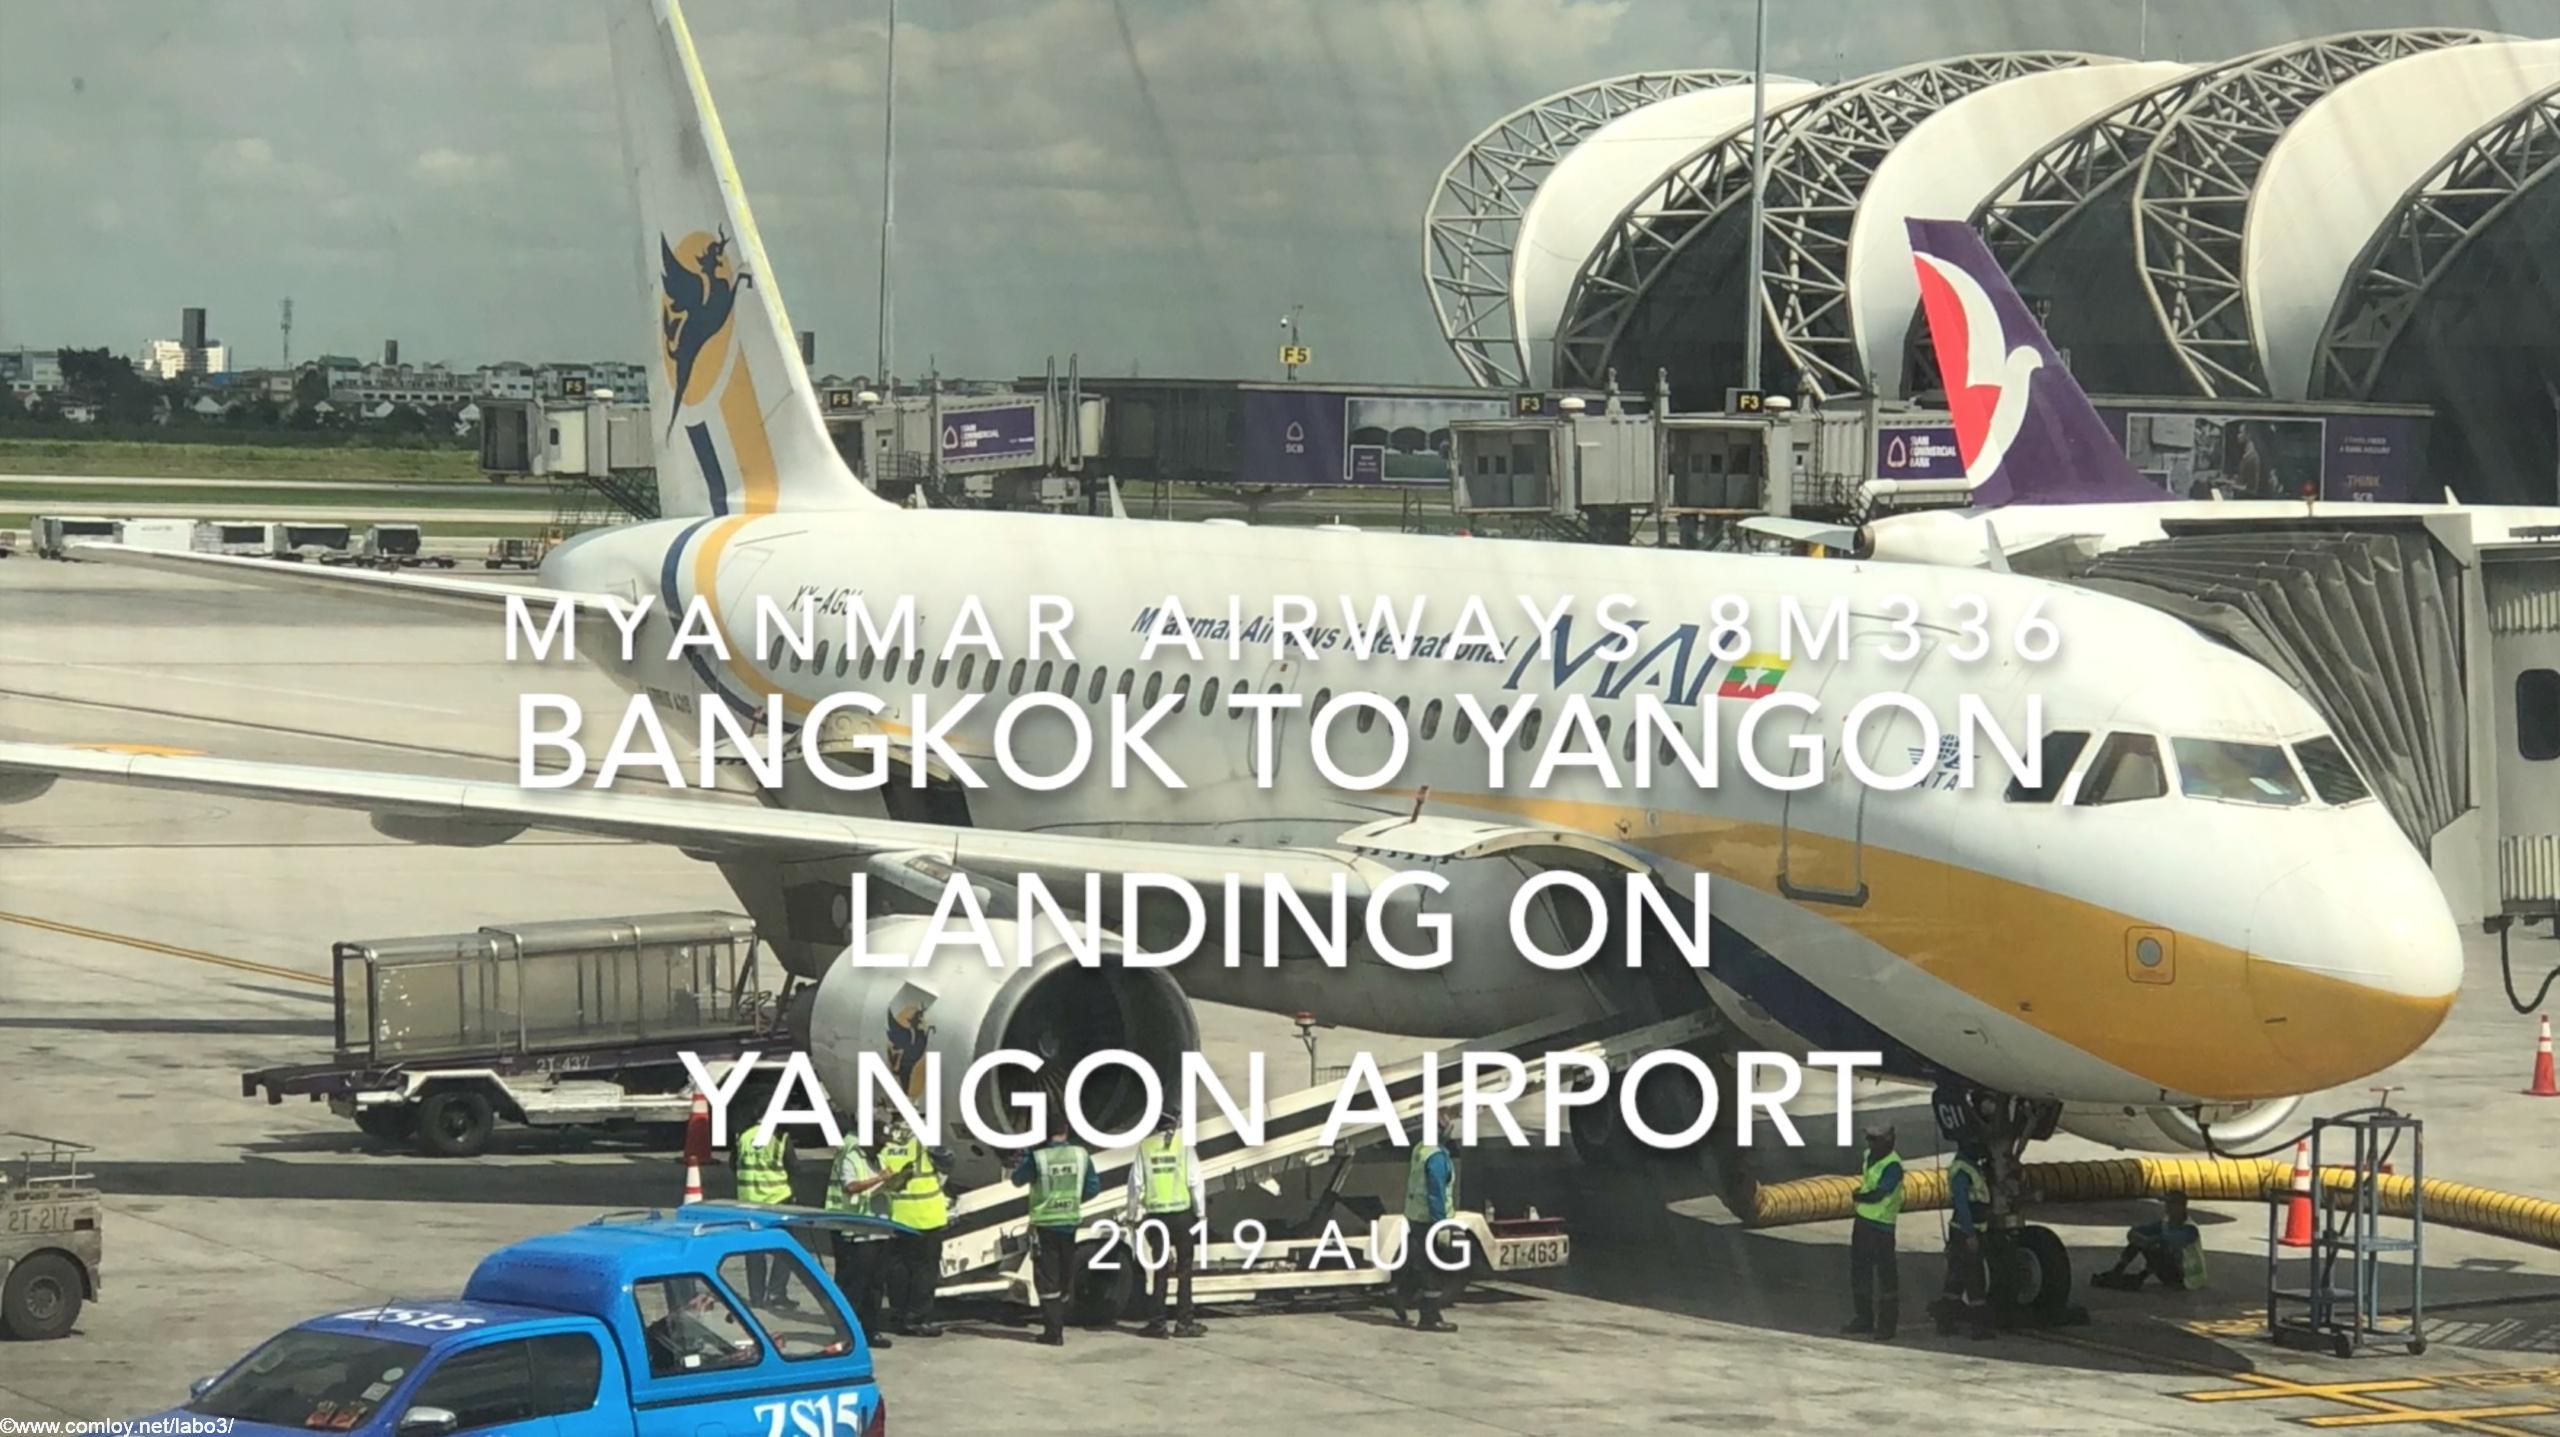 【機内から離着陸映像】2019 AUG Myanmar Airways 8M336 BANGKOK to YANGON, Landing on YANGON Airport